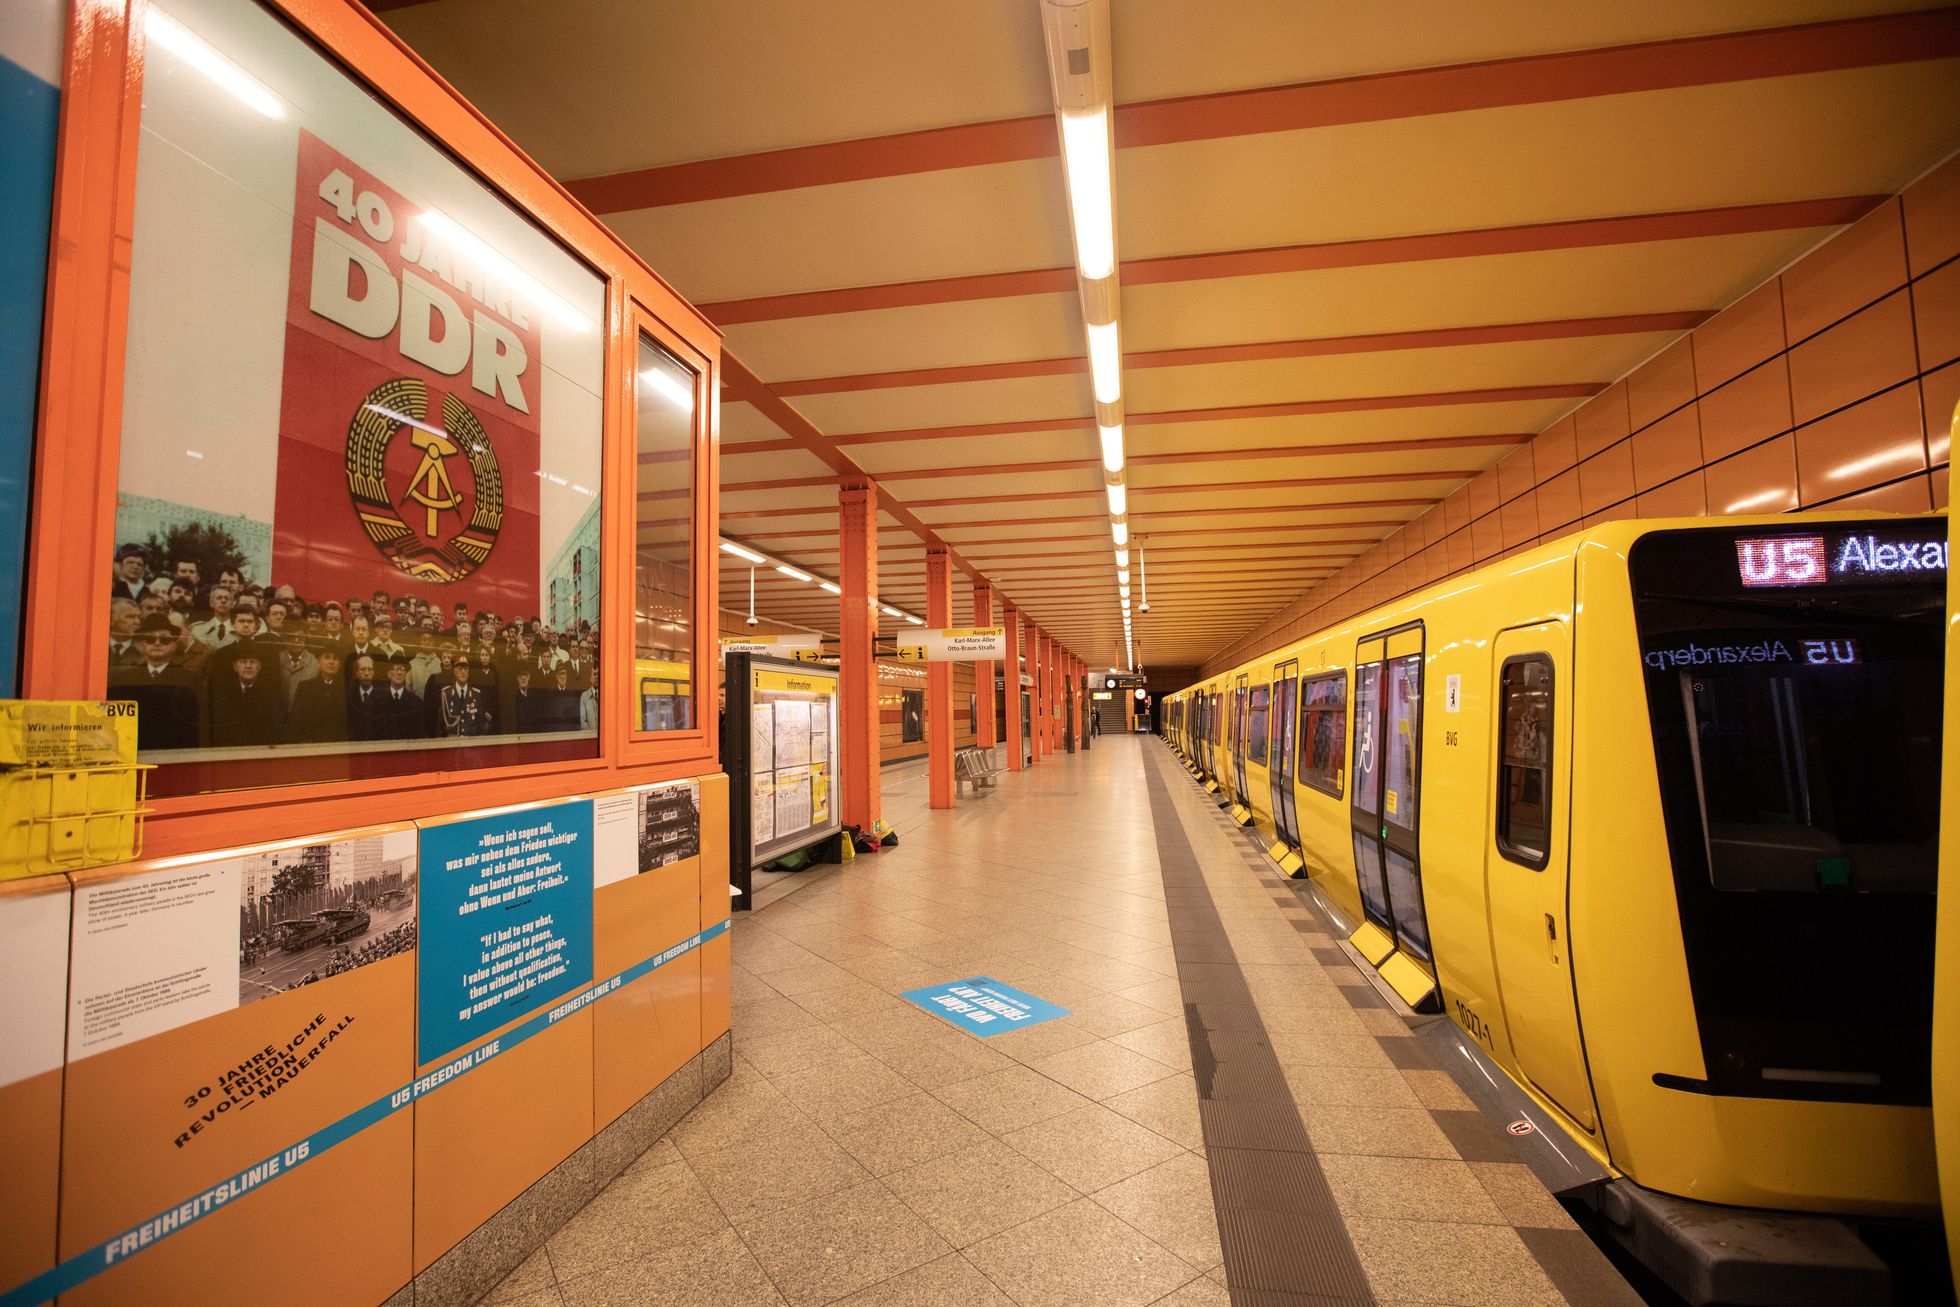 Näitus «U5 – Vabaduse liin» Schillingstrasse metroojaamas Berliinis. Näitus püüab kirjeldada Saksamaa pealinna võitlust demokraatia nimel. Selle raames on U5 metrooliinile Alexanderplatzi ja Magdalenenstrasse jaamade vahel seatud välja infotahvlid ja ajaloolised fotod.